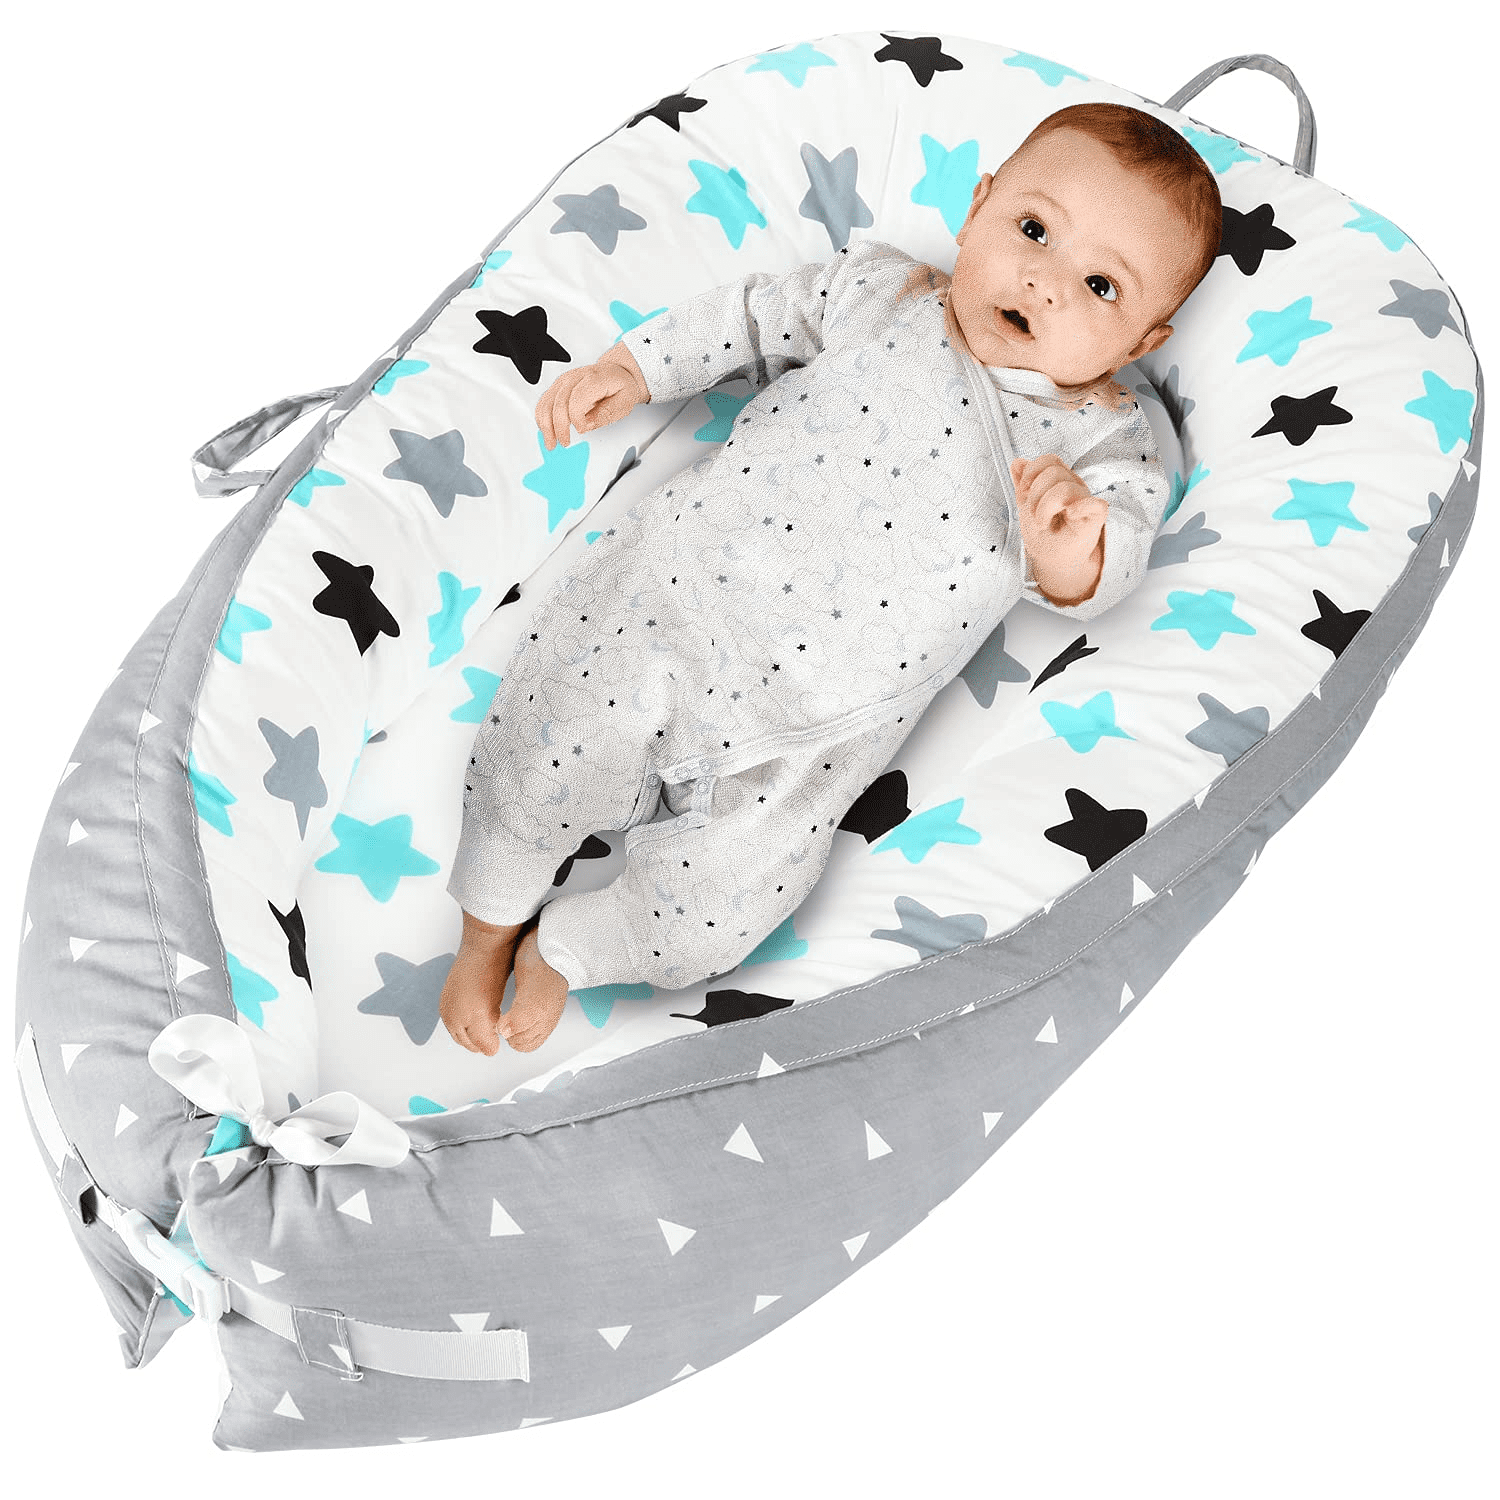 Gray Brandream Baby Nest Bed Braided Crib Bumper/Cot Bumper Braided Babynest Co Sleeper Baby Cocoon Newborn Infant Bassinet/Lounger for Bed 